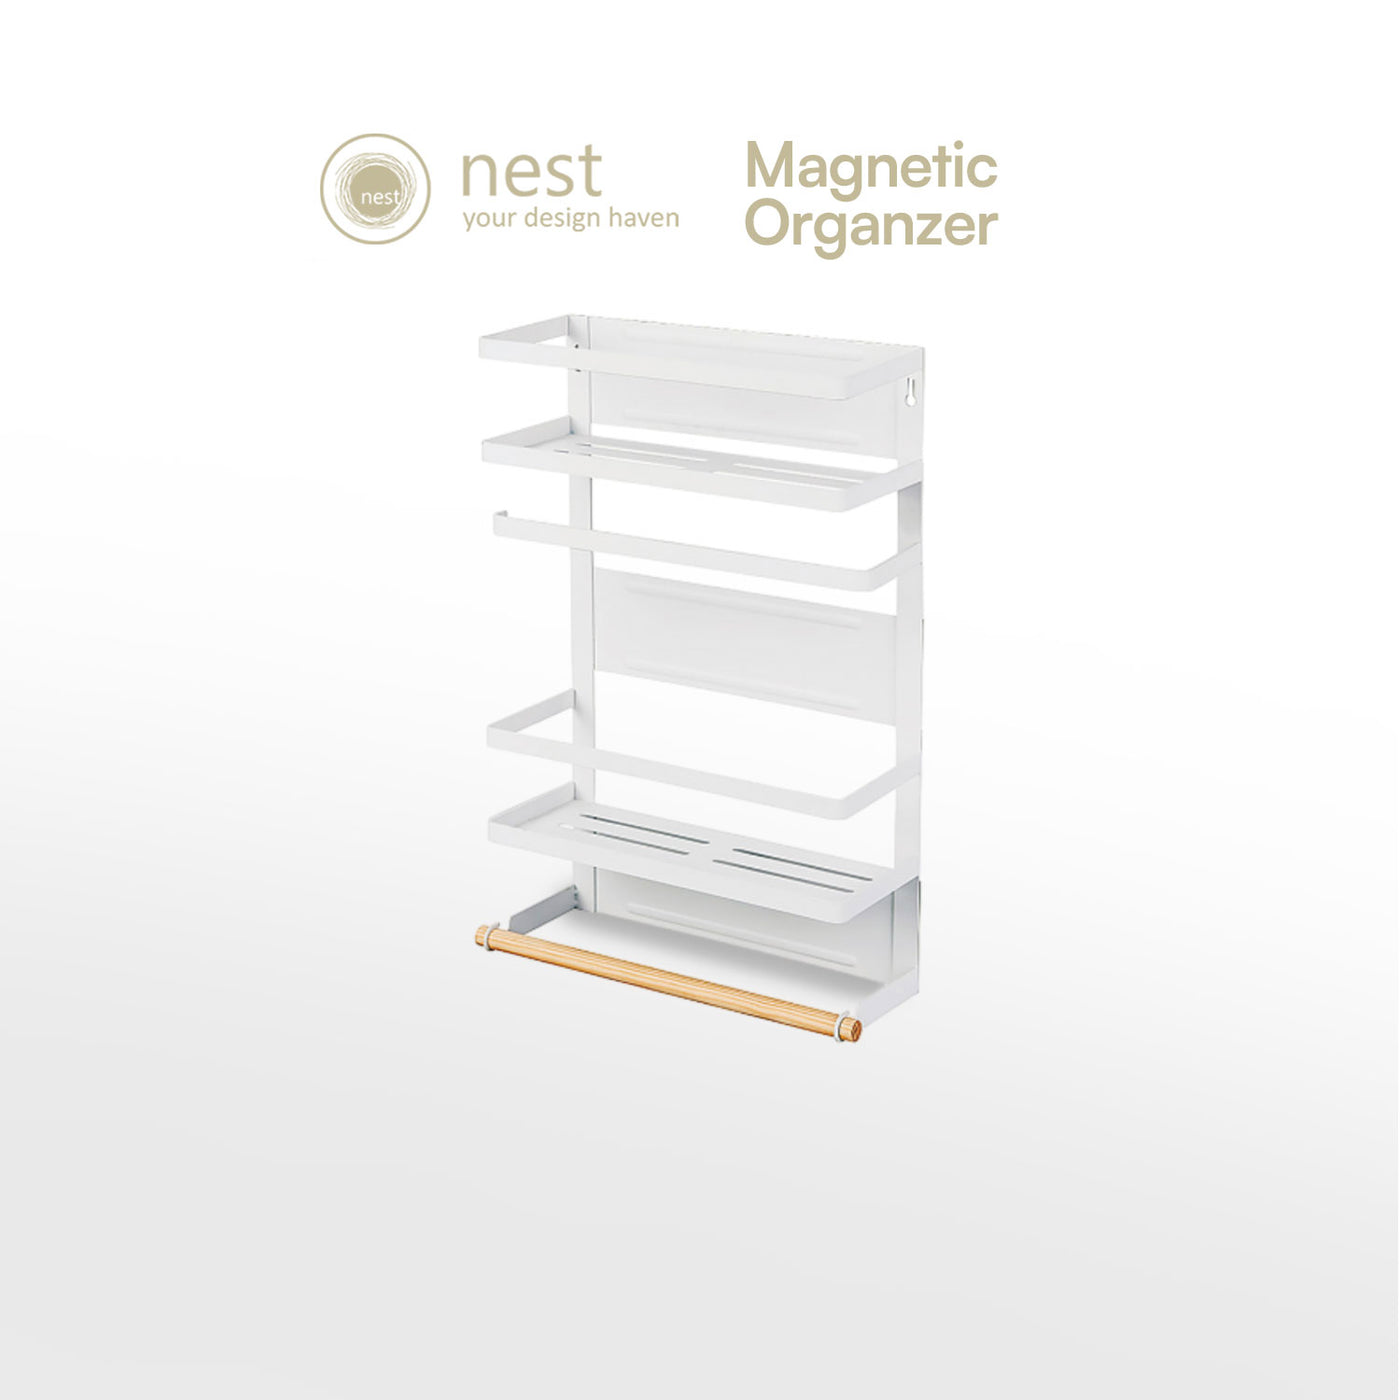 Nest Design Lab Premium 2 Tier Magnetic Organizer Rack Metal 48cm